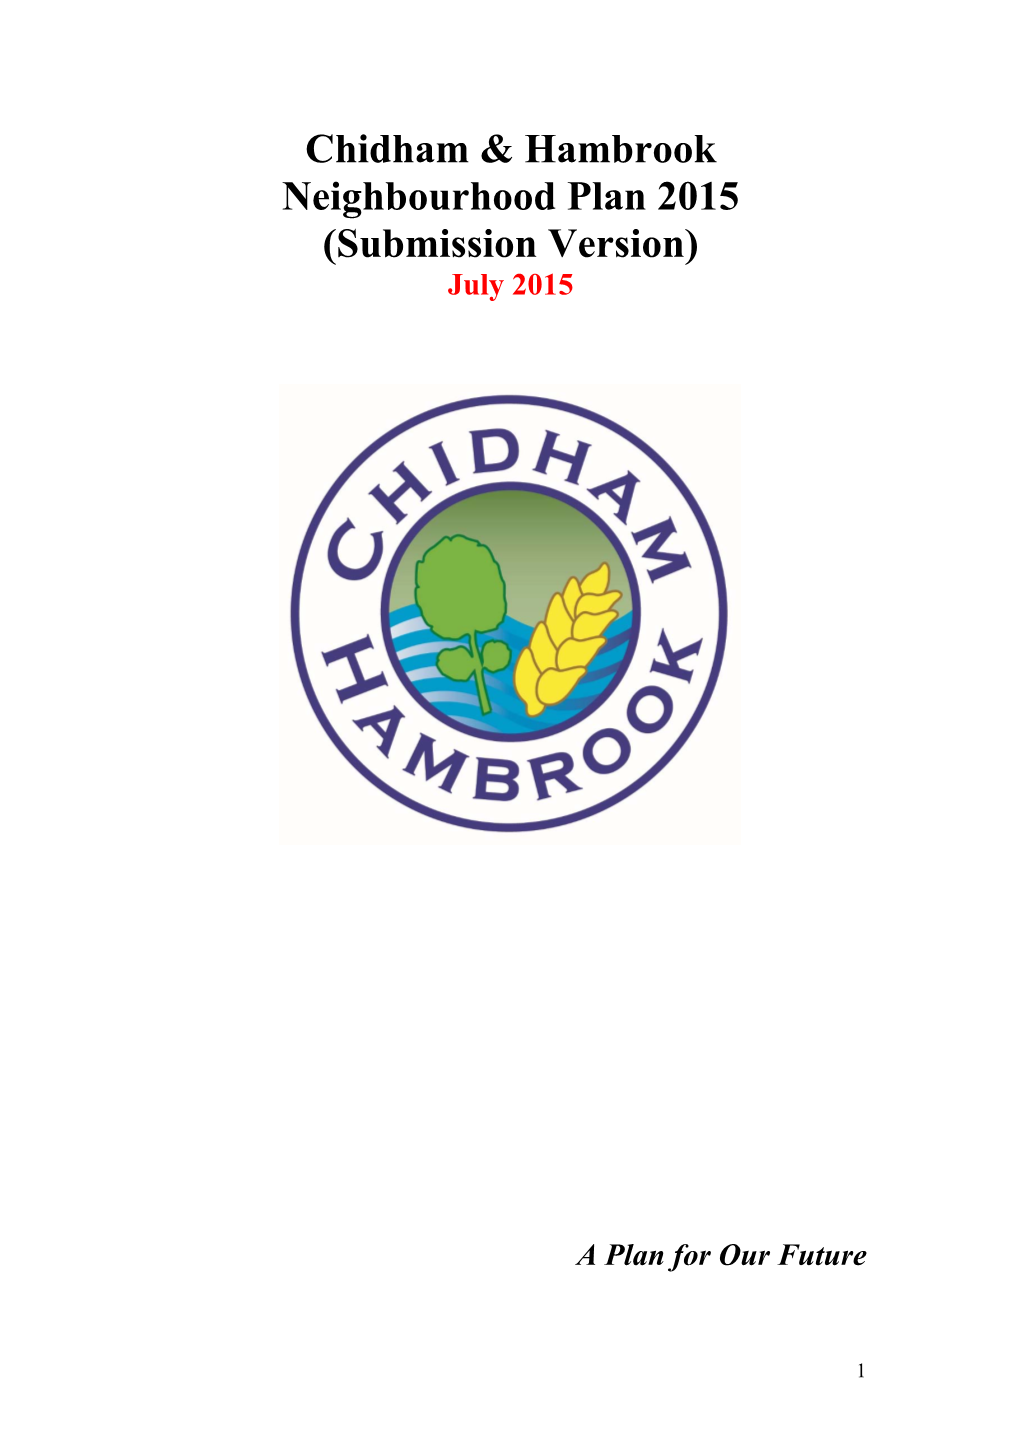 Chidham and Hambrook Neighbourhood Development Plan